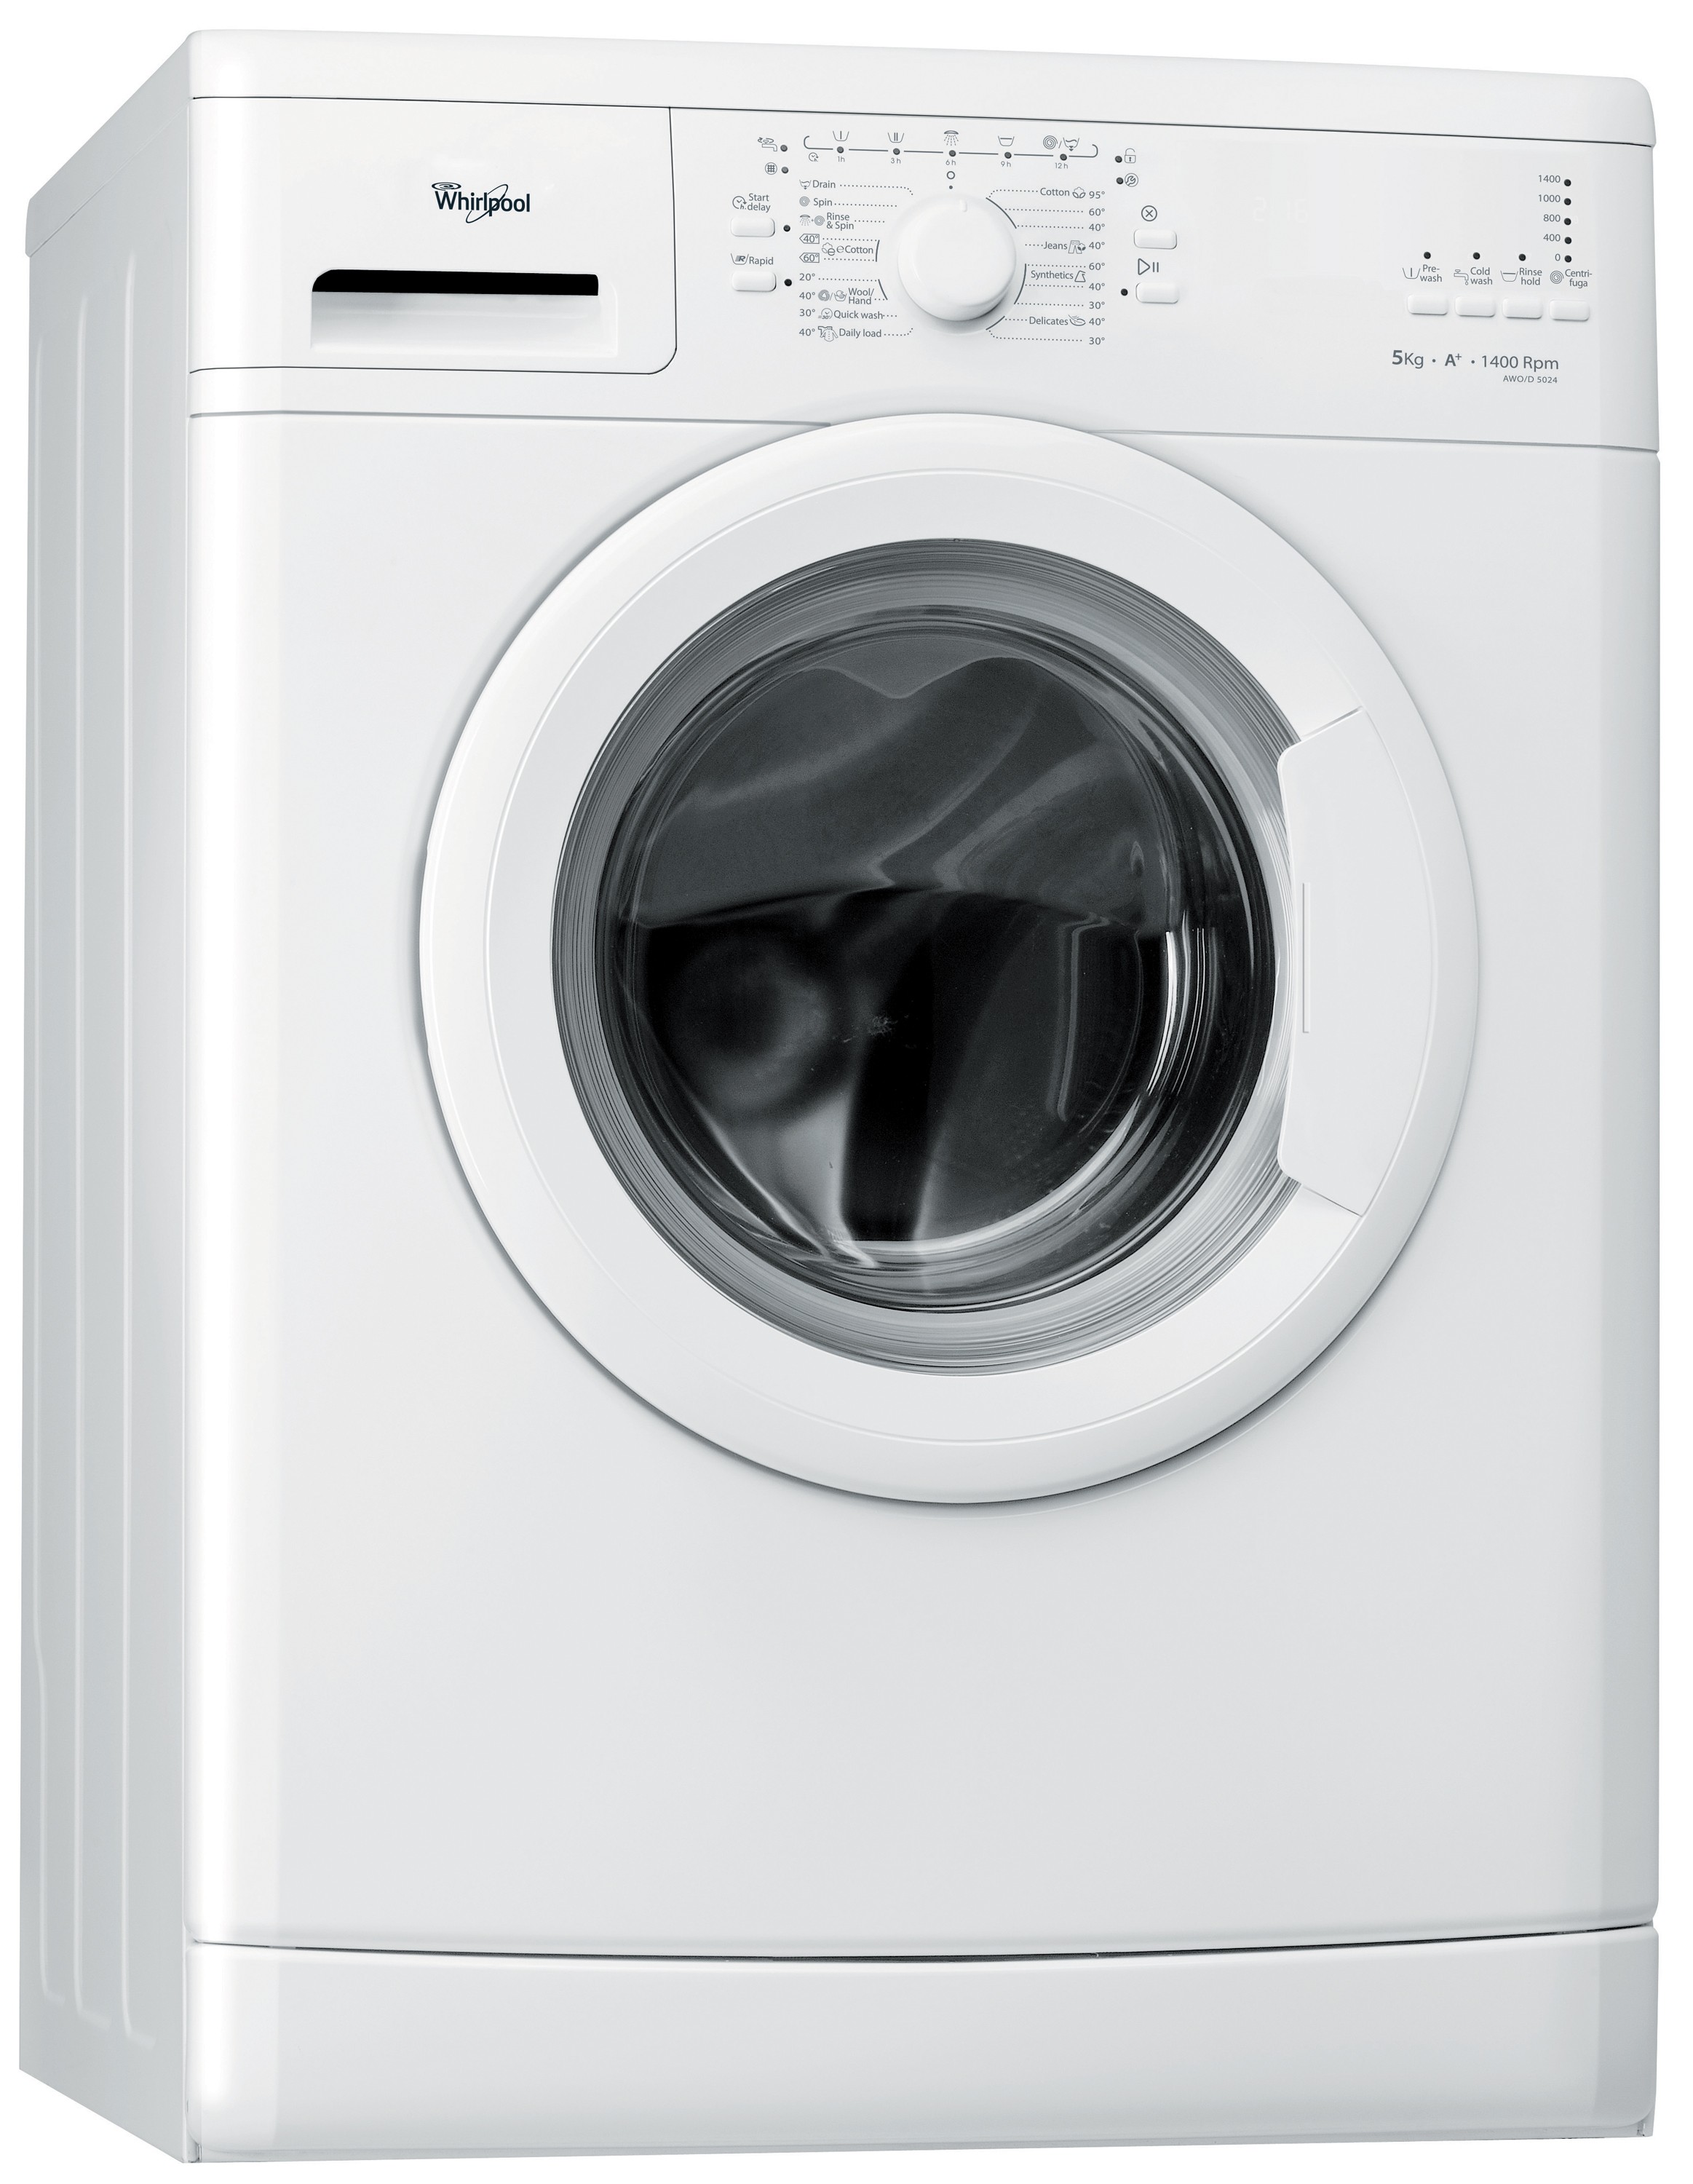 Samsung vaskemaskin ww12h8400ew